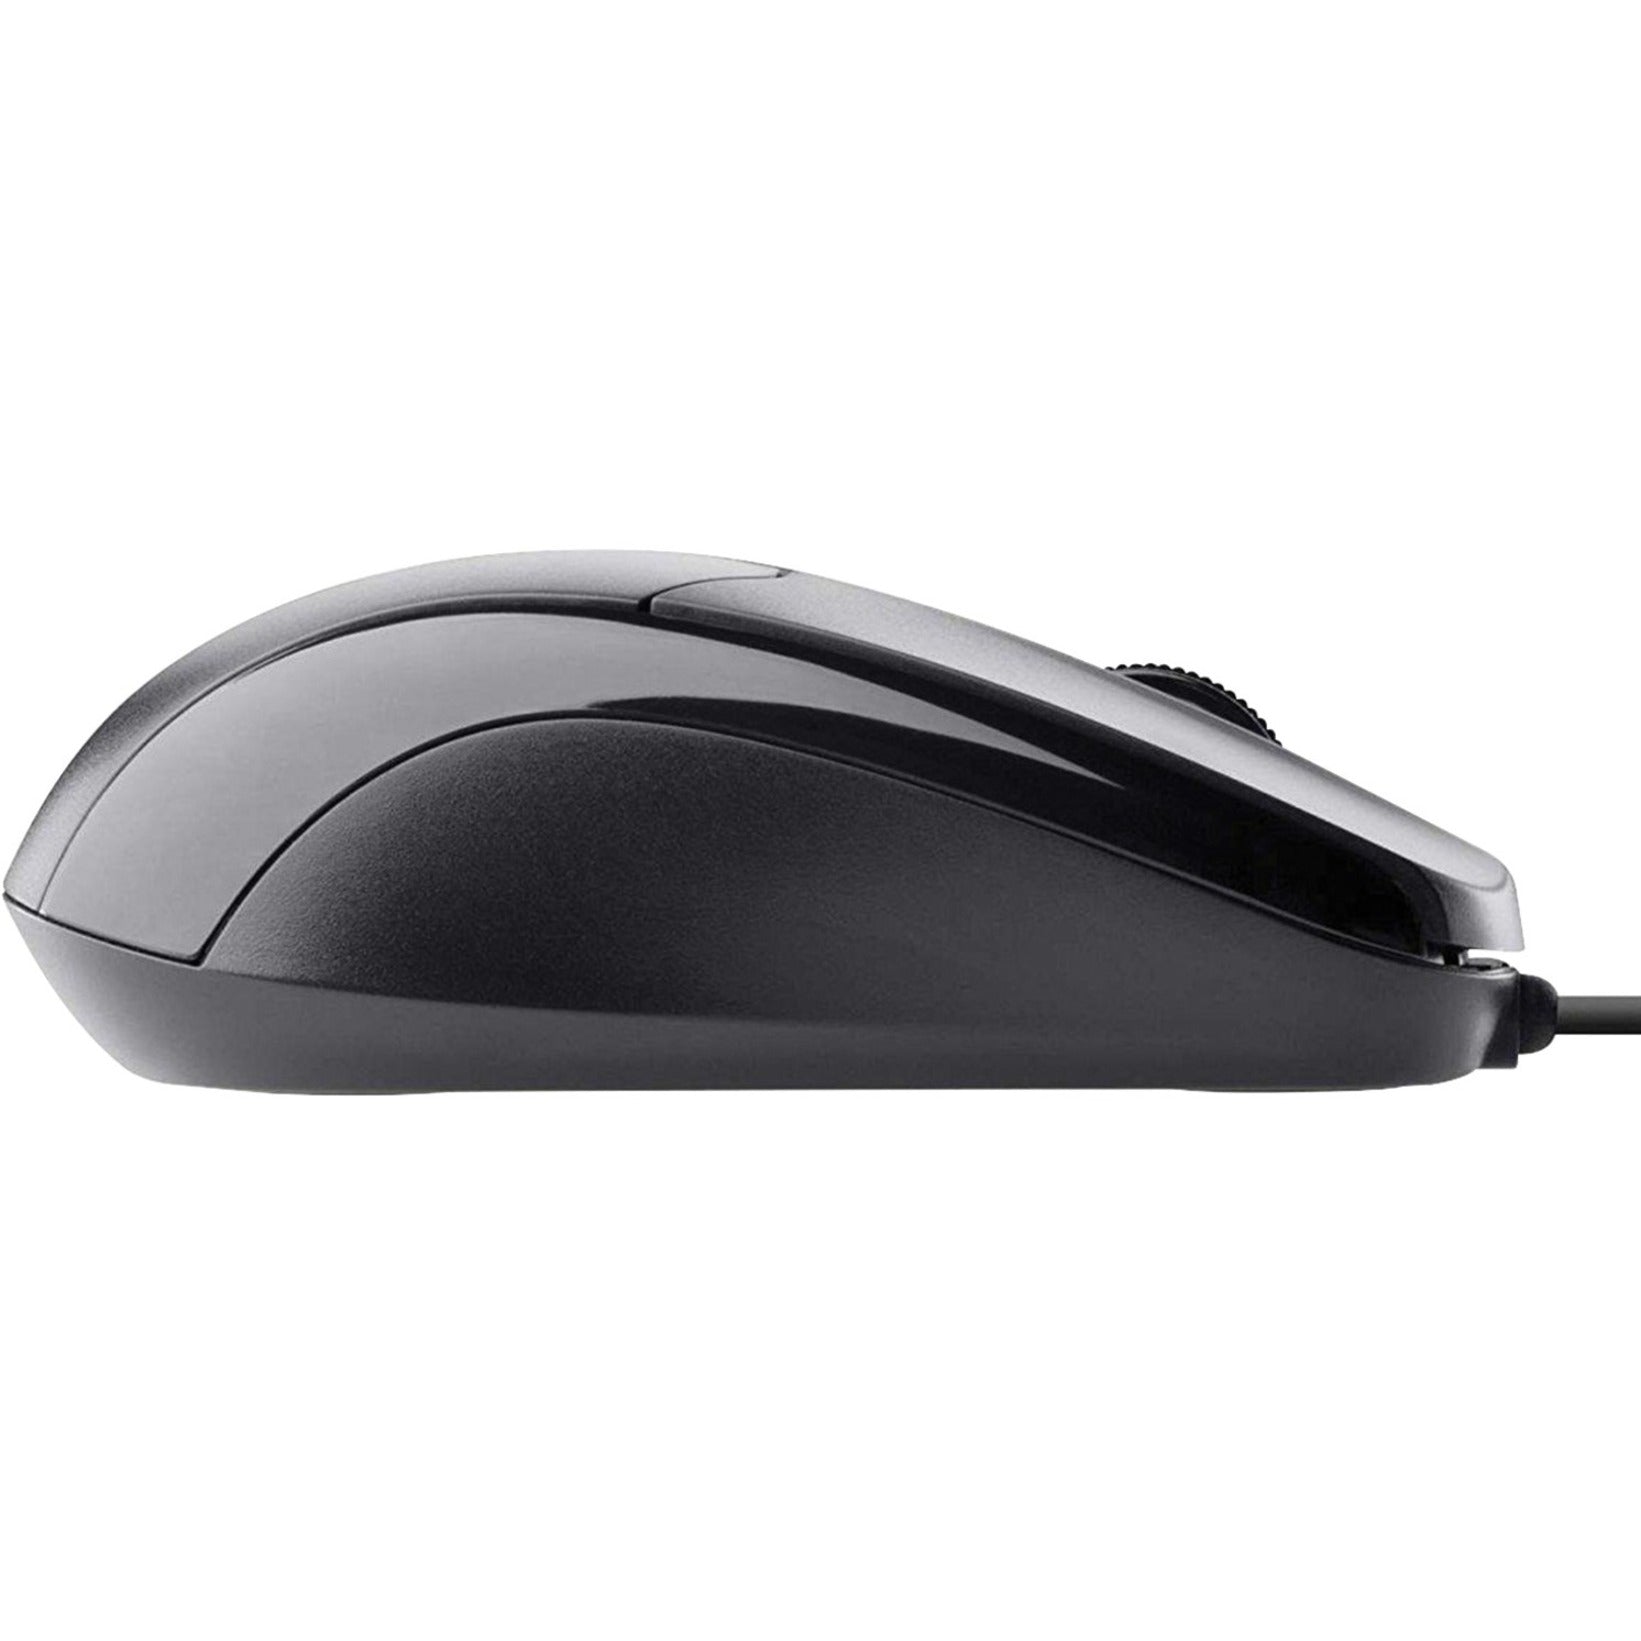 Belkin F5M010QBLK Mouse, Ergonomic Design, 800 DPI Optical Scroller